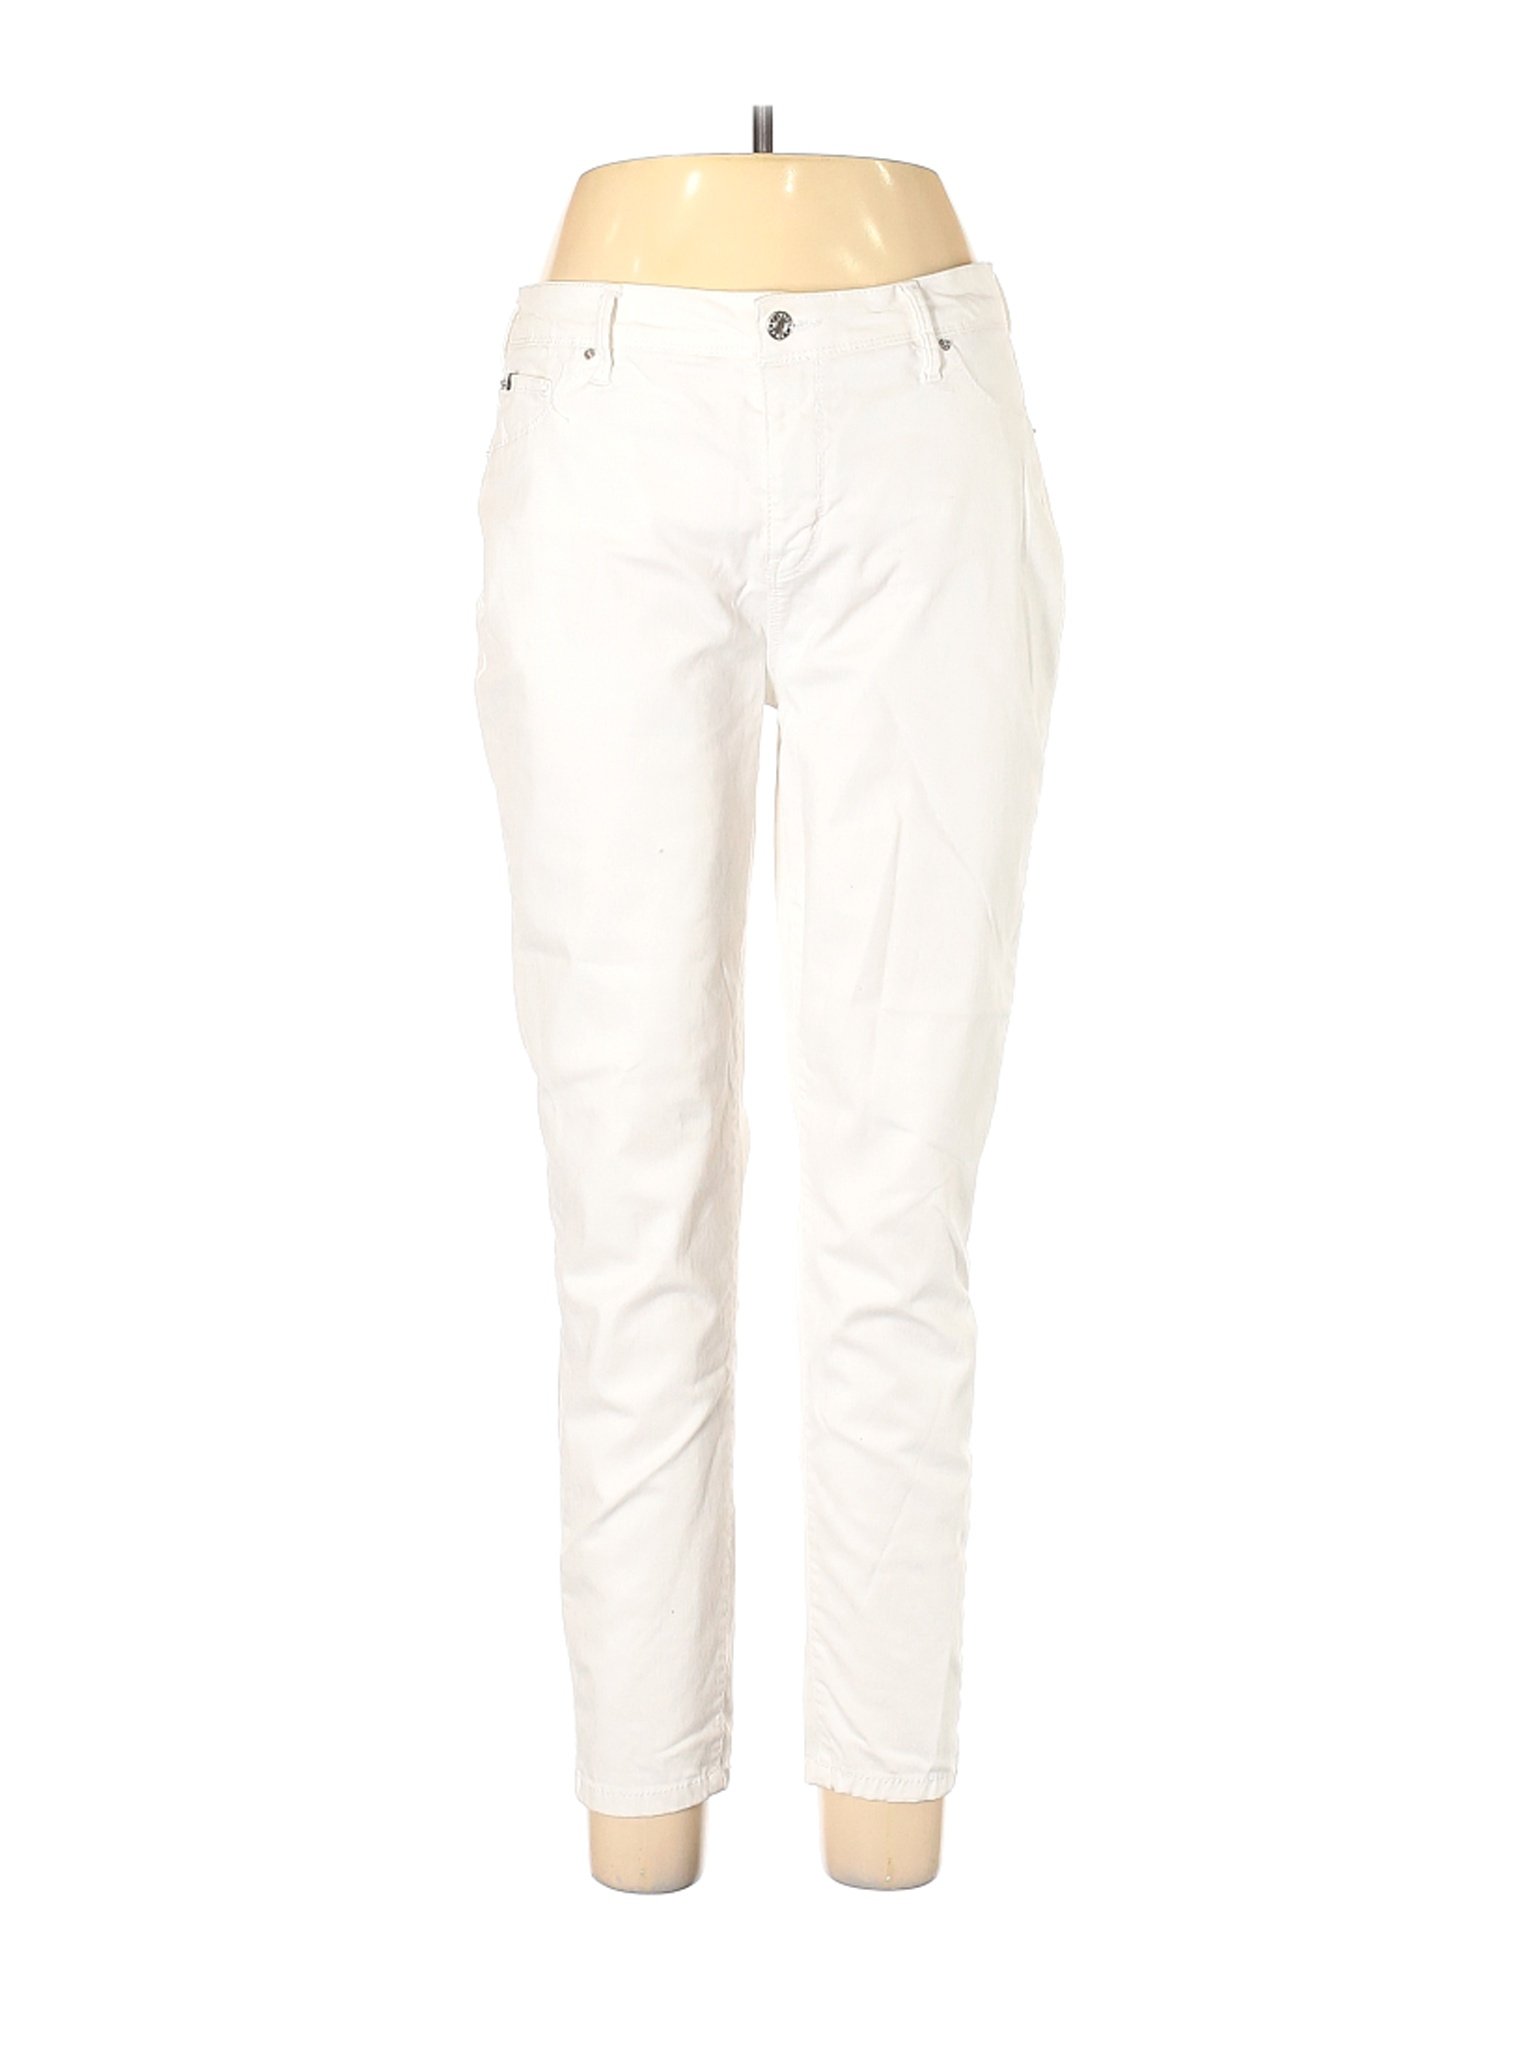 Curve Appeal Women White Jeans 12 | eBay